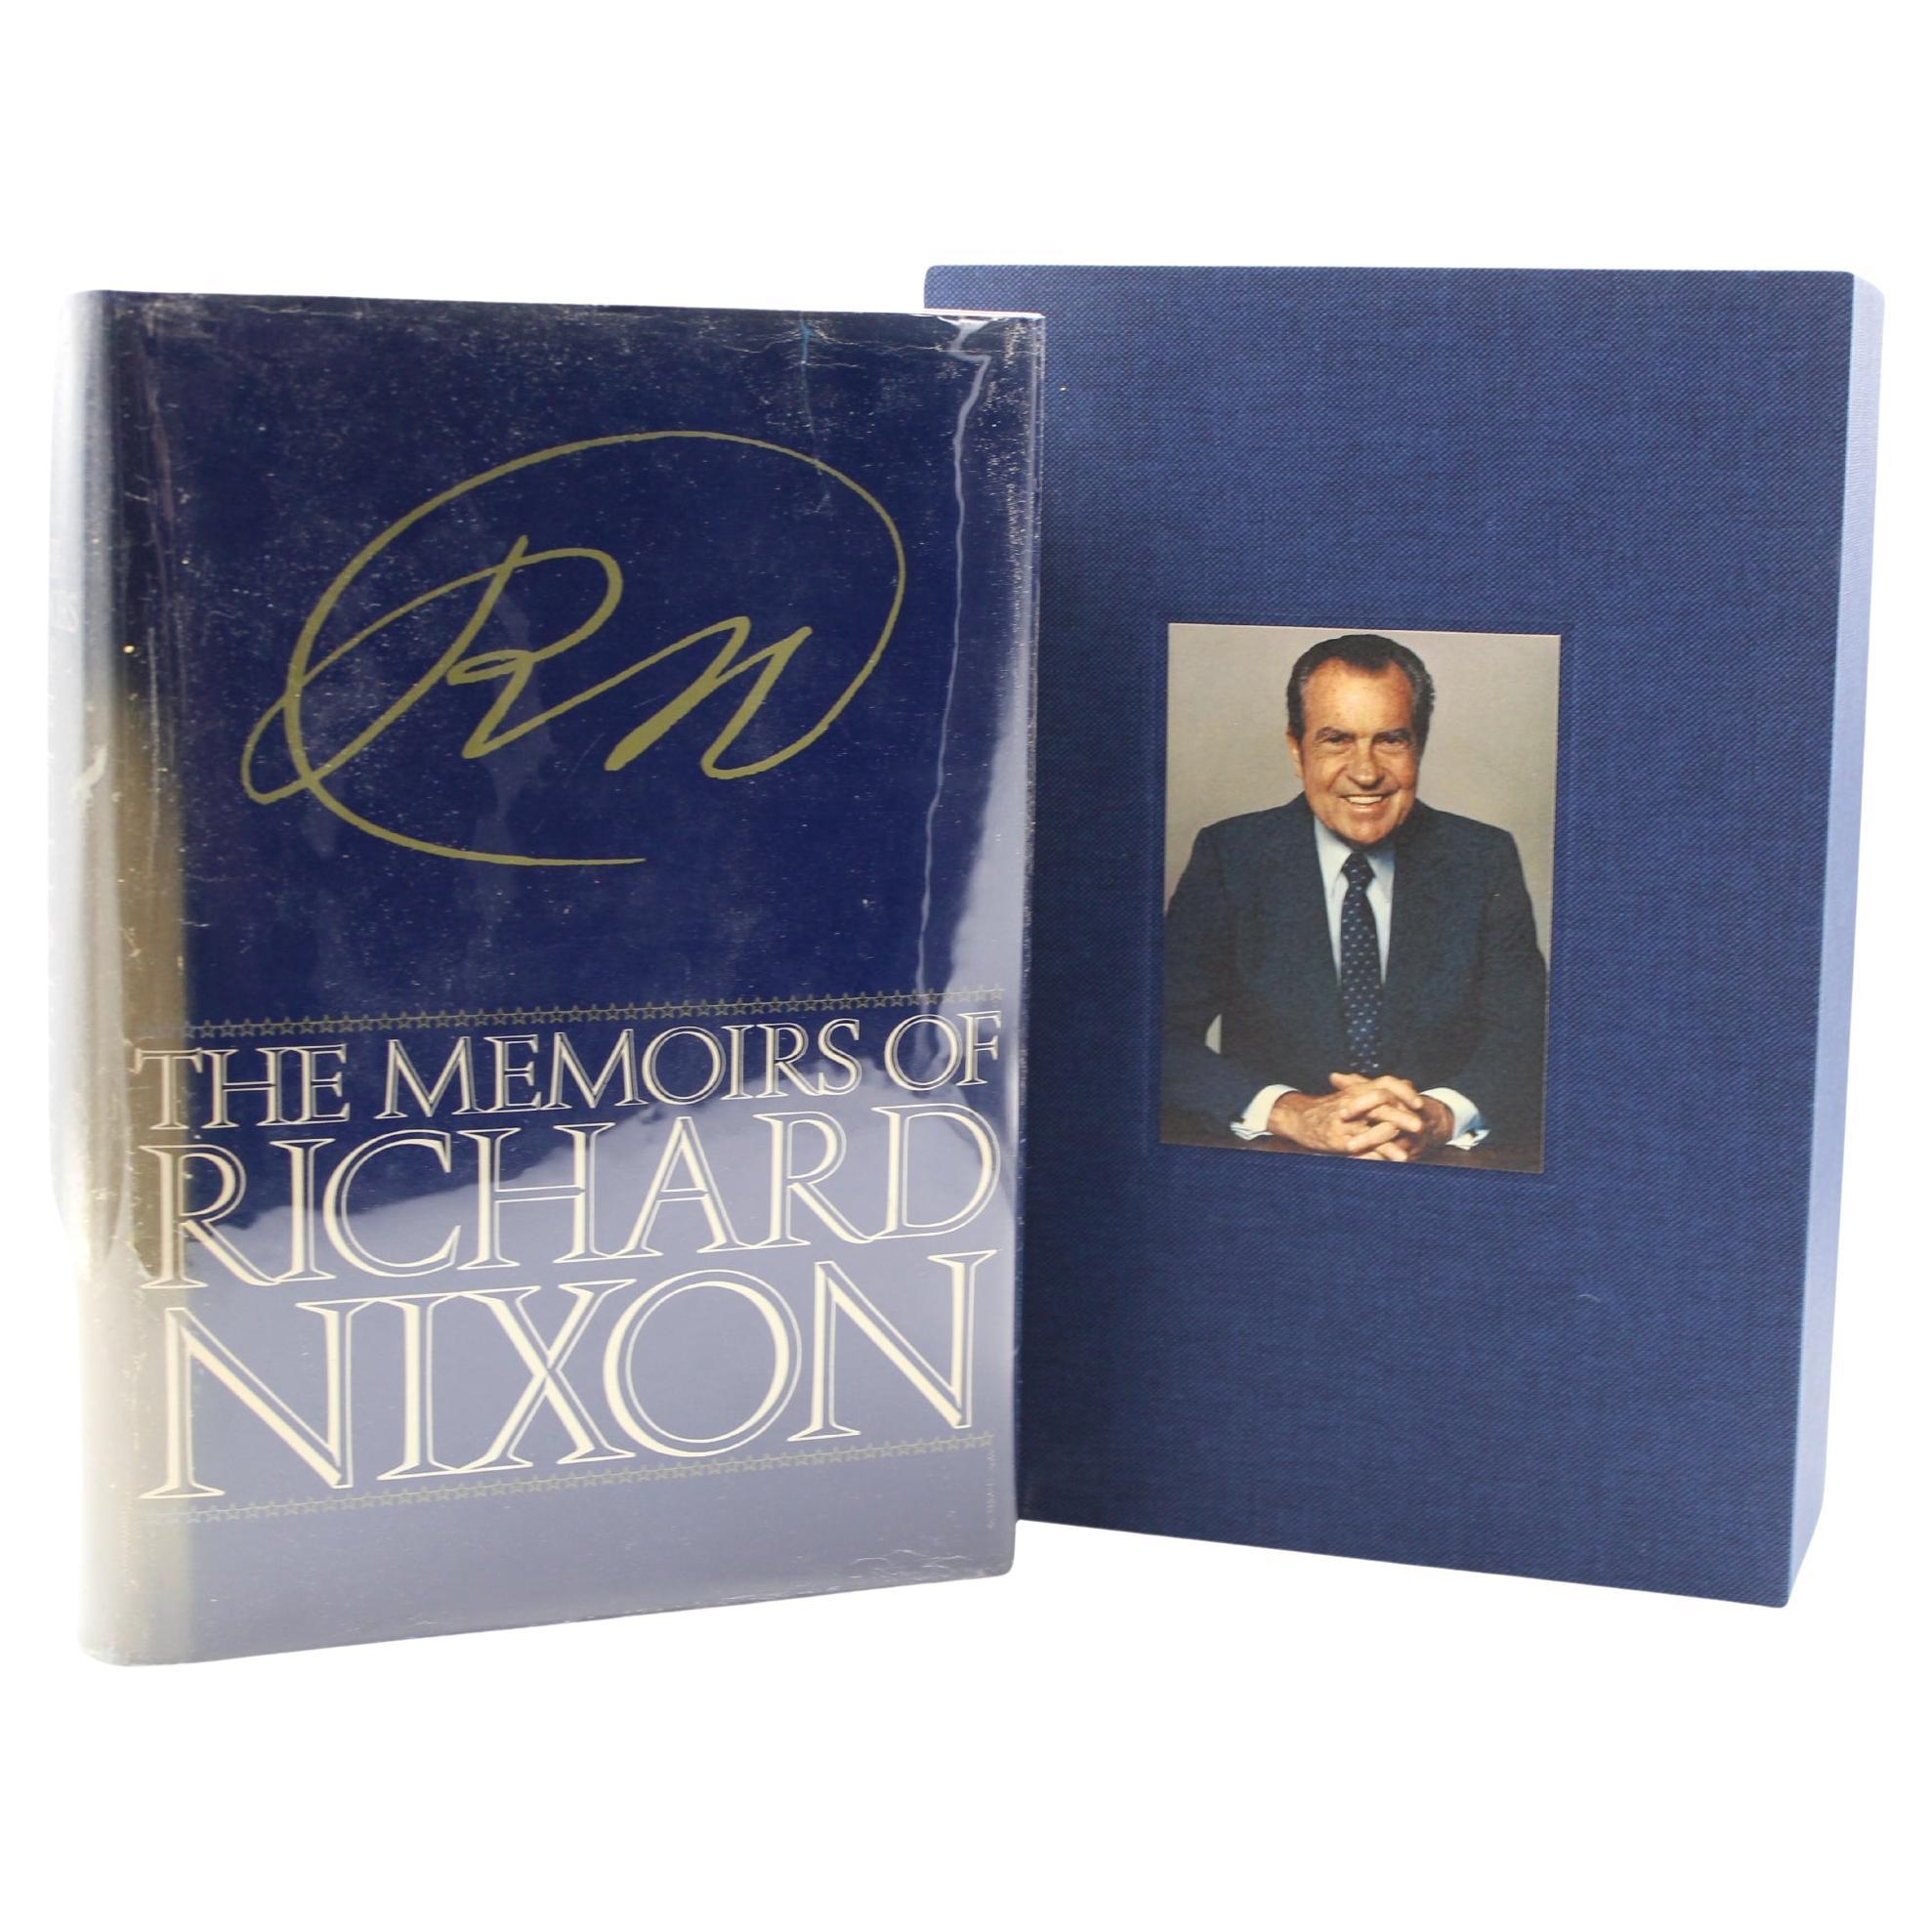 The Memoirs of Richard Nixon von Richard Nixon, signiert, Erstausgabe, 1978